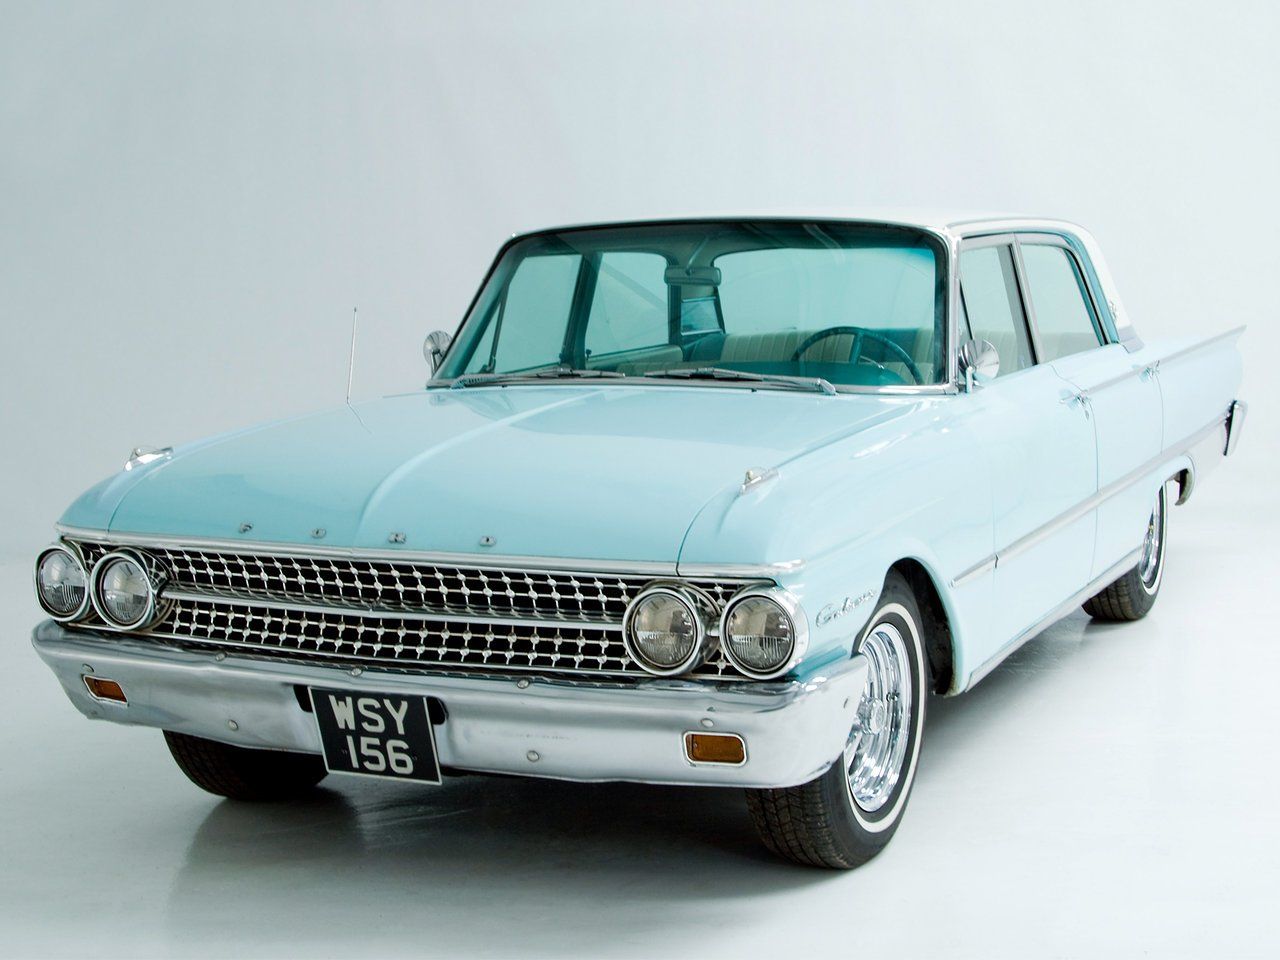 1960s sedan